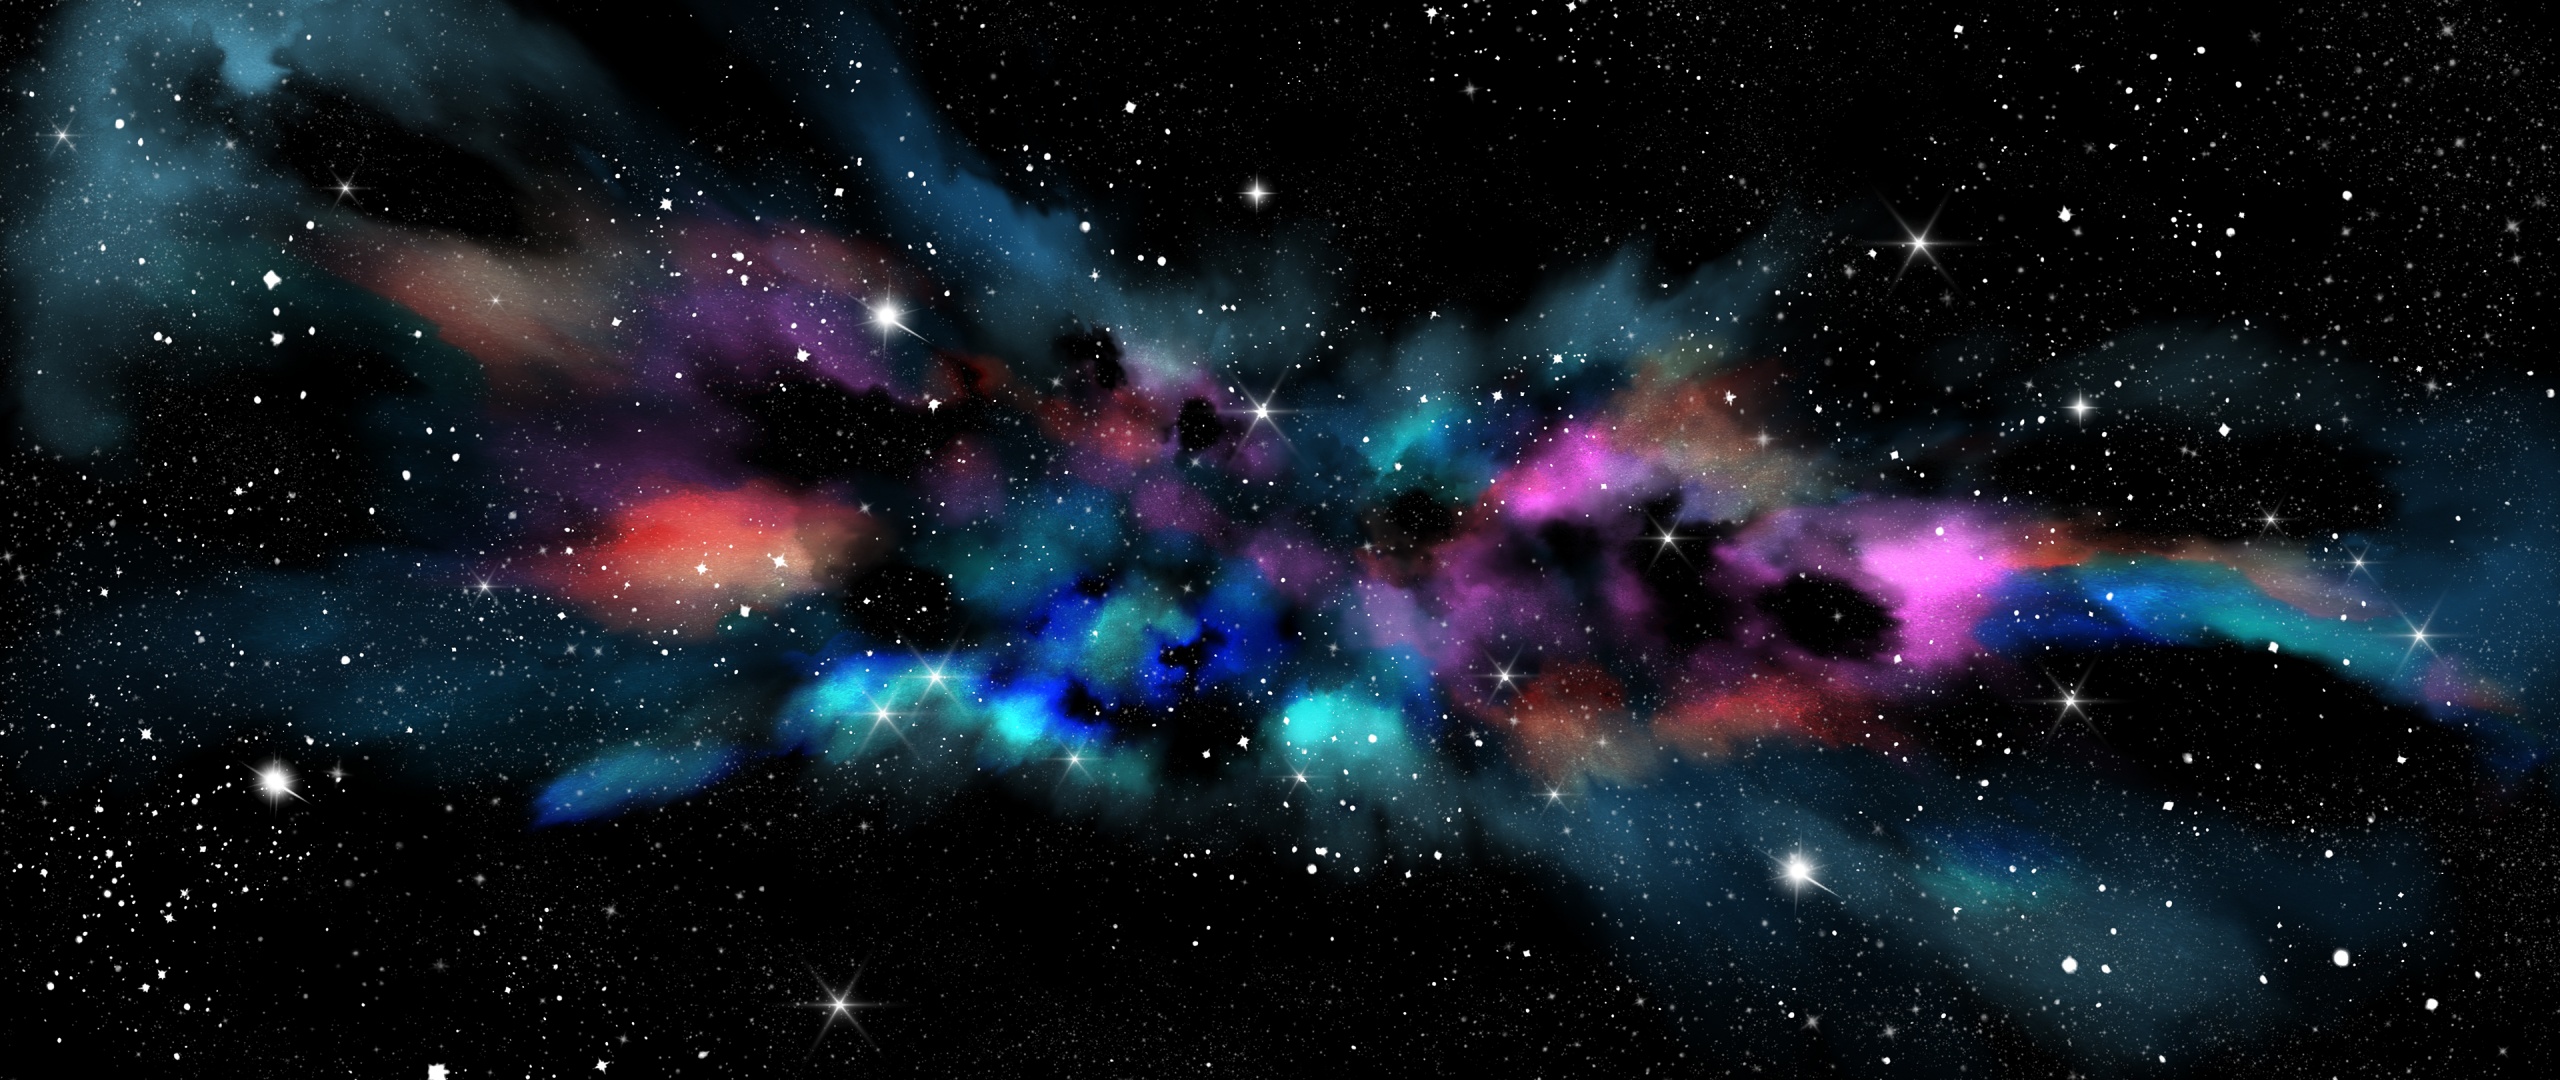 Ngân hà - Hãy khám phá không gian phiêu lưu và đầy bí ẩn của ngân hà bằng bức ảnh này. Những dải chân trời, tinh tú và vũ trụ đầy màu sắc sẽ cho bạn cảm giác như đang đứng trên một hành tinh xa xôi.